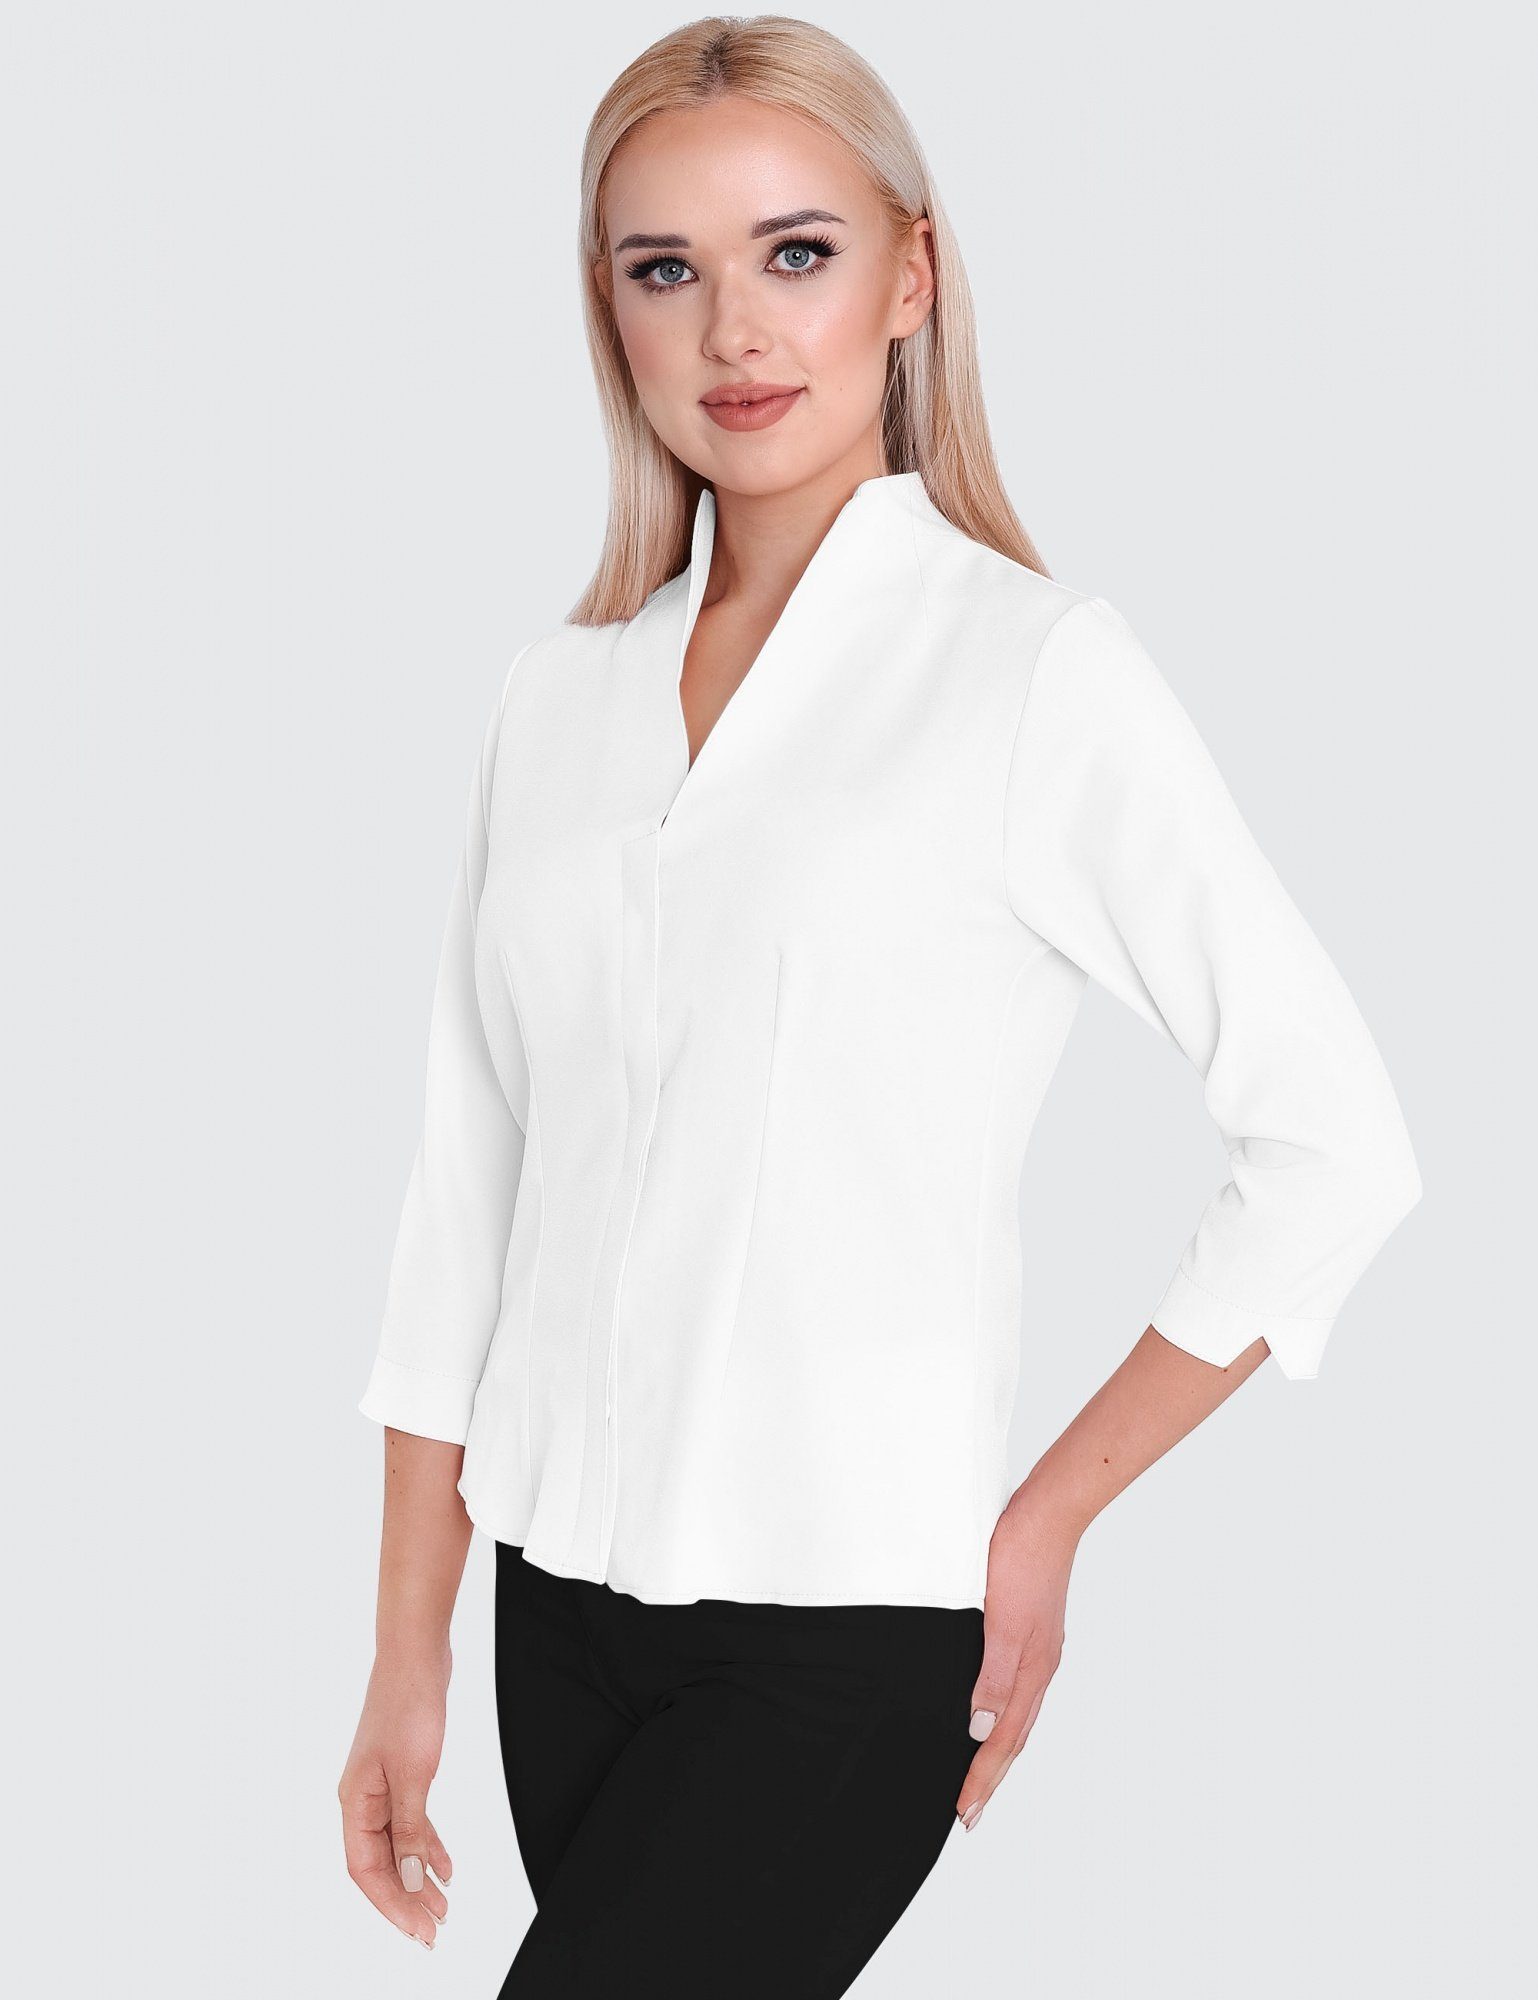 HEVENTON Klassische Bluse Kelchkragen, Business-Bluse Weiß 3/4-Ärmel, mit bügelleicht